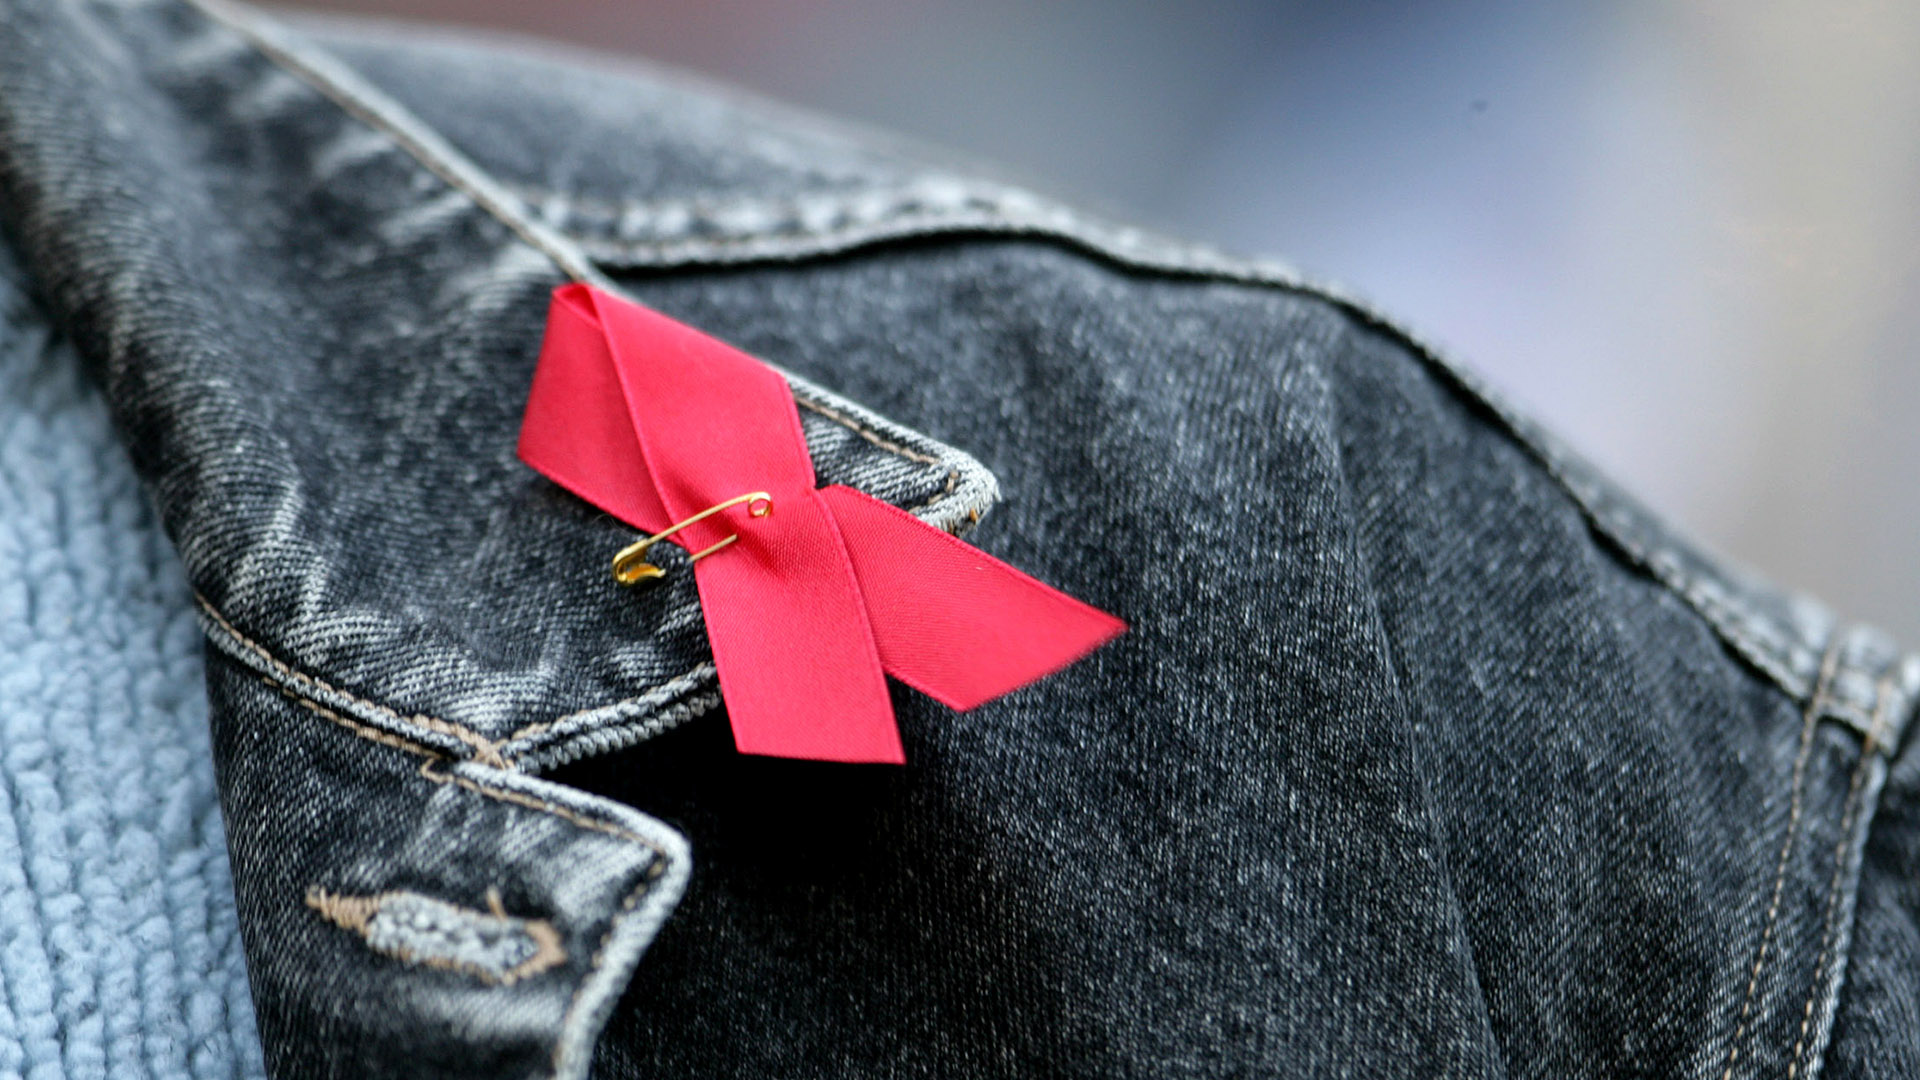 Symbolbild:Die Rote Aids-Schleife ist an eine Jacke geheftet. Die Rote Schleife ( englisch Red Ribbon ) ist weltweit ein Symbol der Solidarität mit HIV-Infizierten und AIDS-Kranken.(Quelle:picture alliance/R.Goldmann)